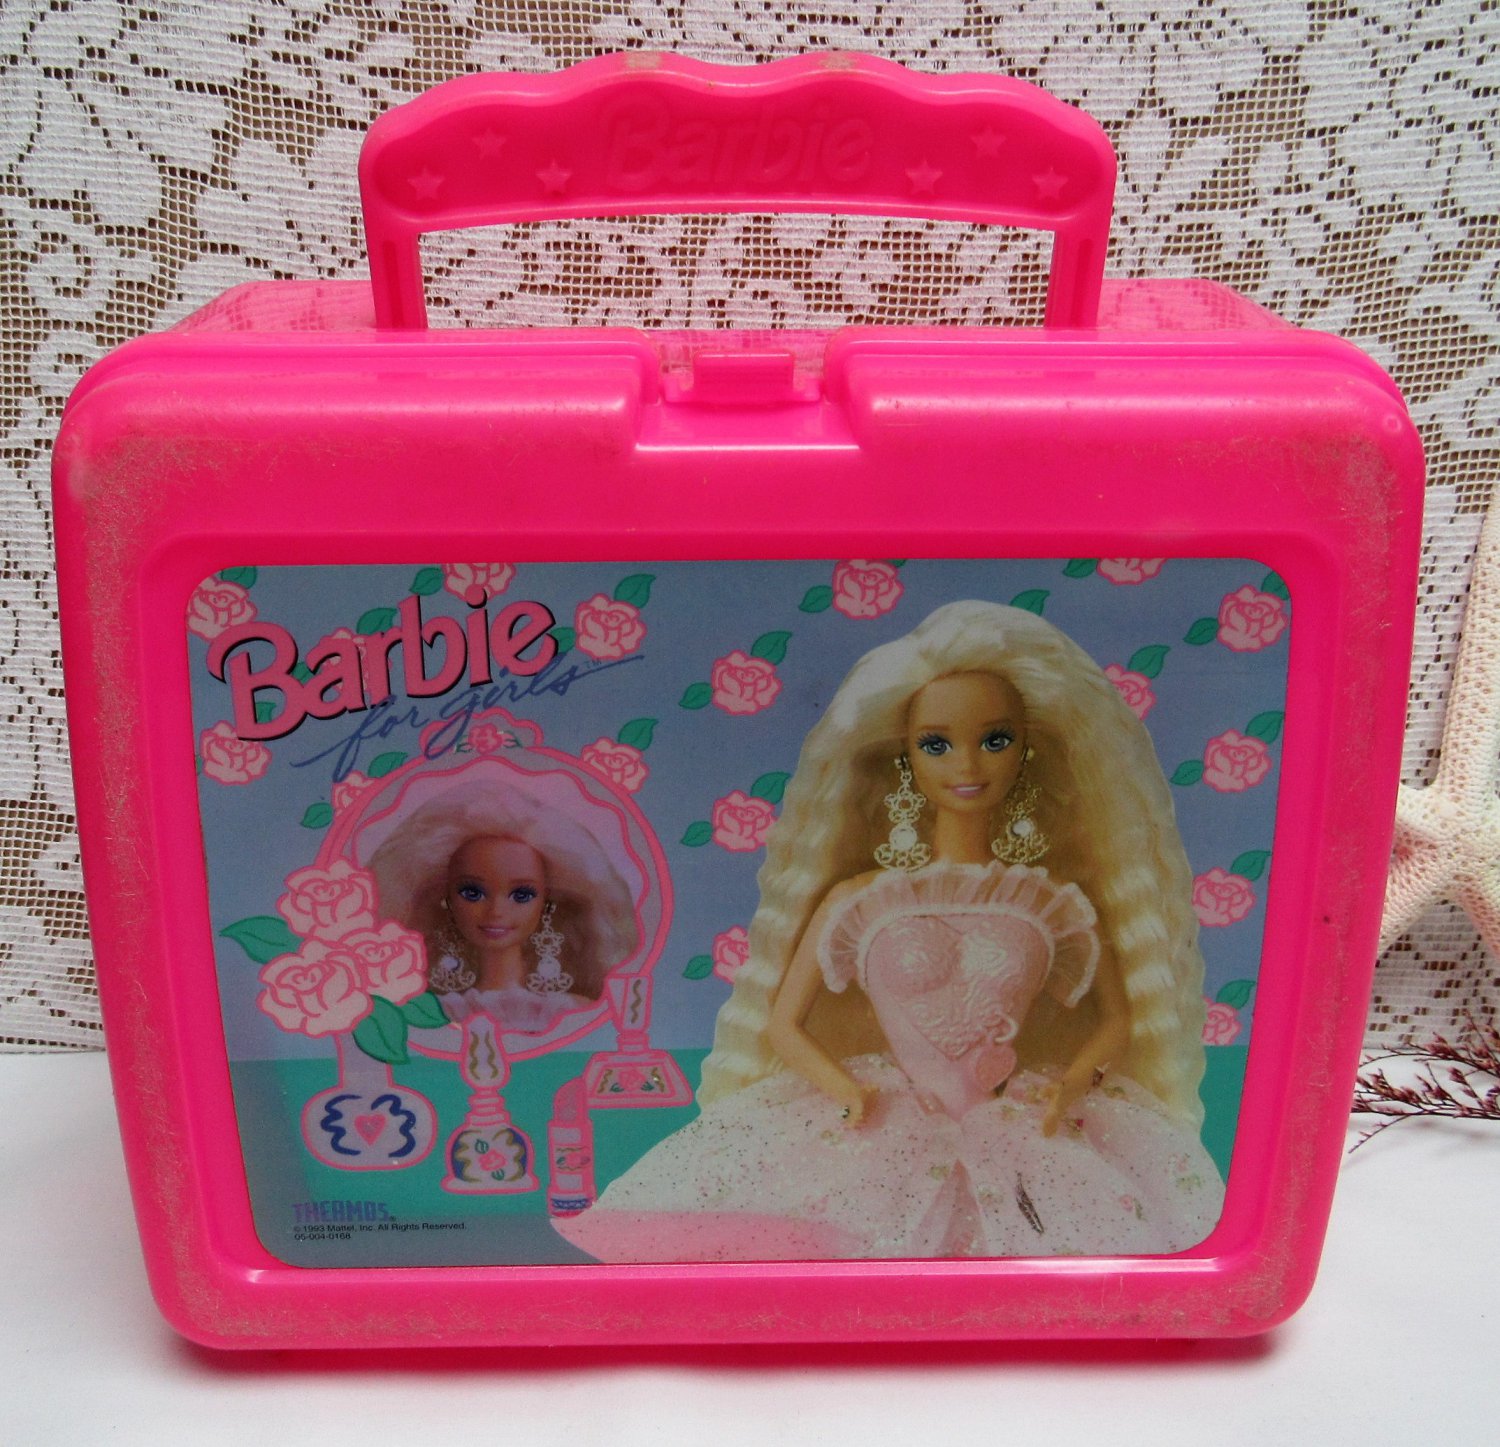 original barbie box